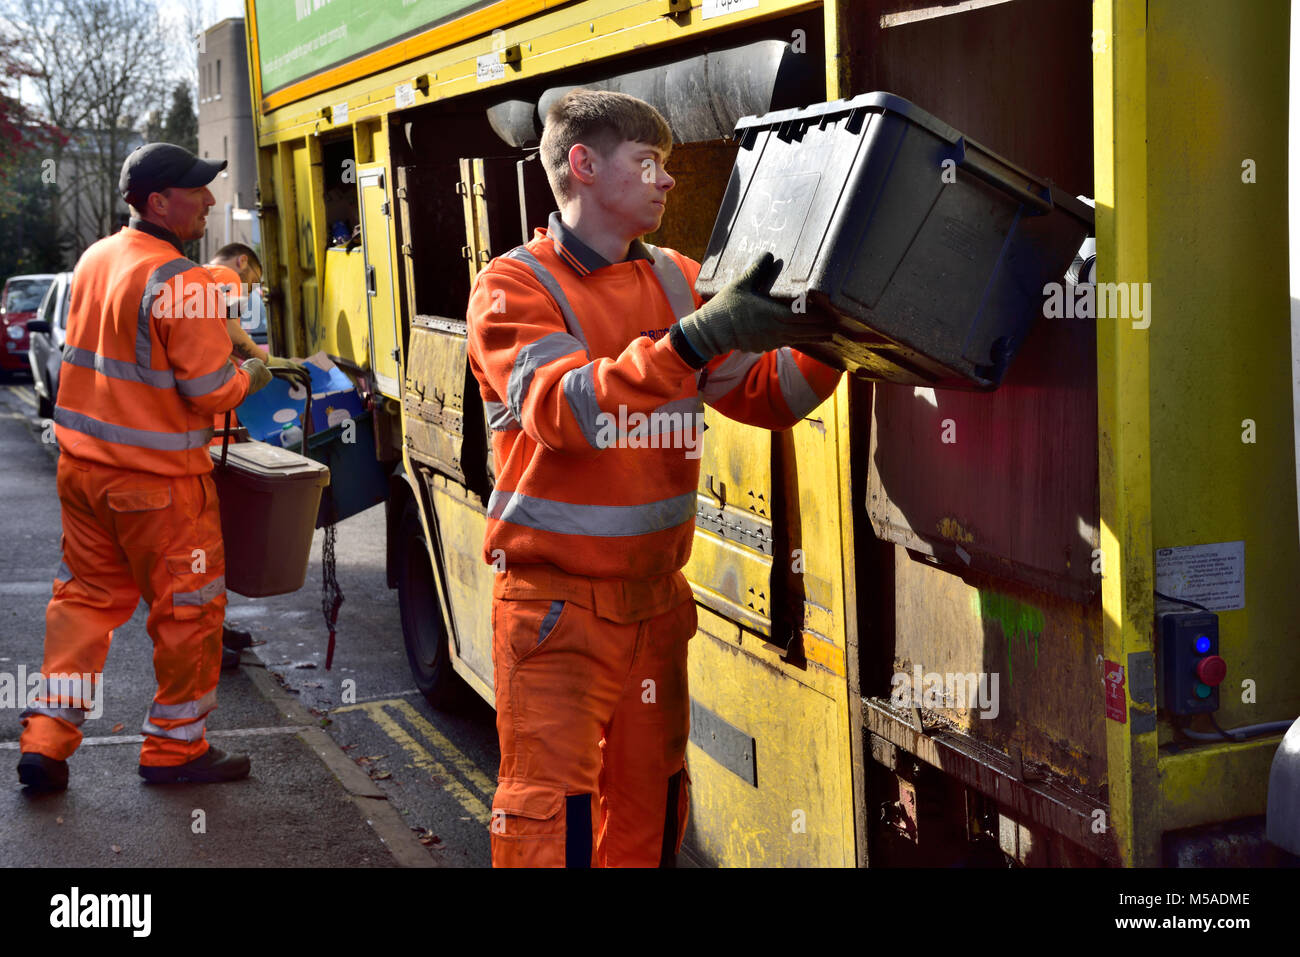 Collecte de recyclage camion avec des ouvriers sur tours faisant le tri qu'ils recueillent, UK Banque D'Images